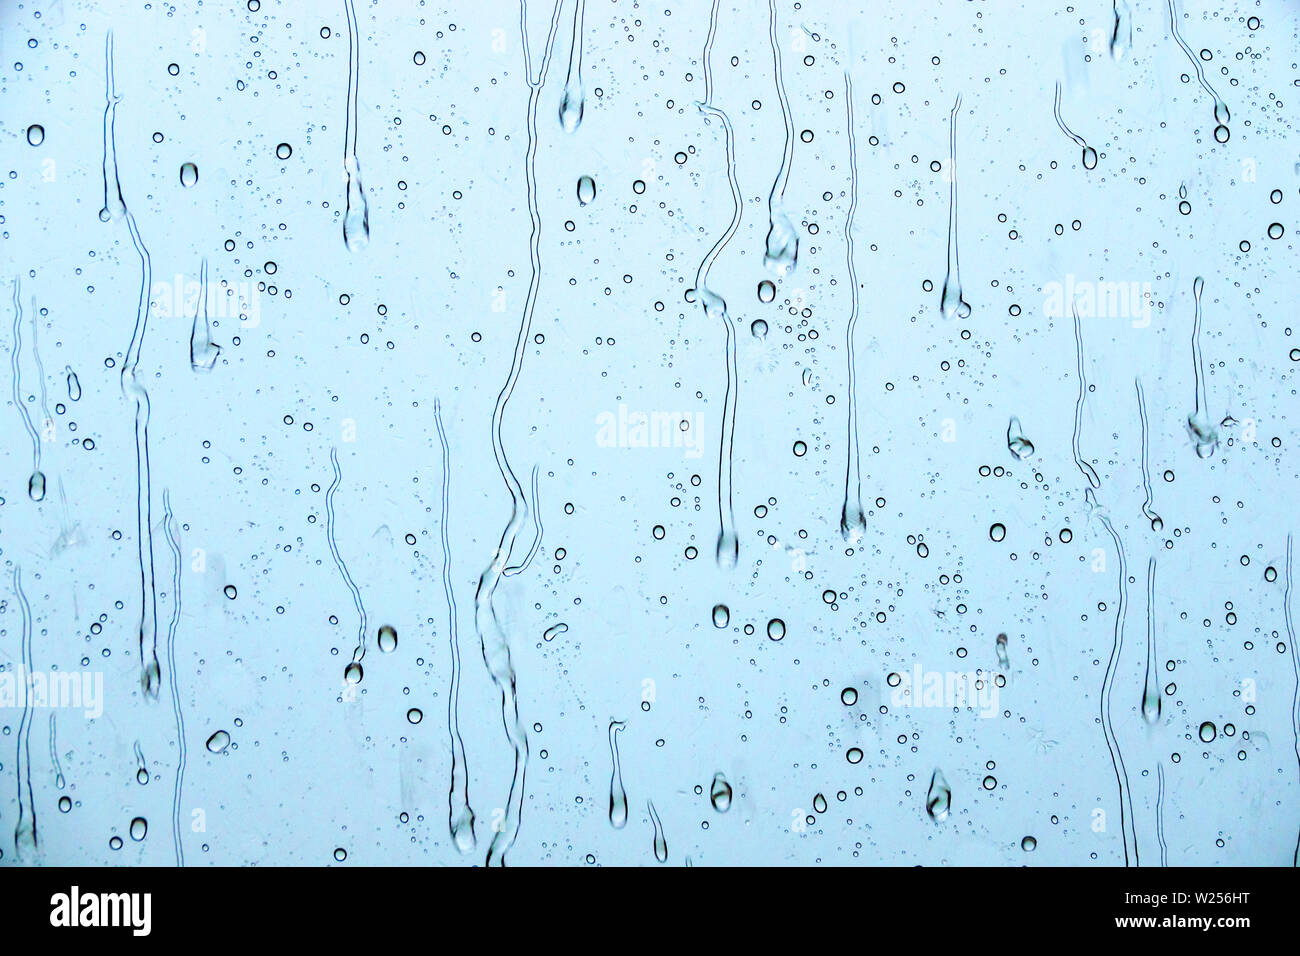 Miami Beach Florida, North Beach, pioggia vetro finestra raindrops streaming, meteo, FL190615030 Foto Stock